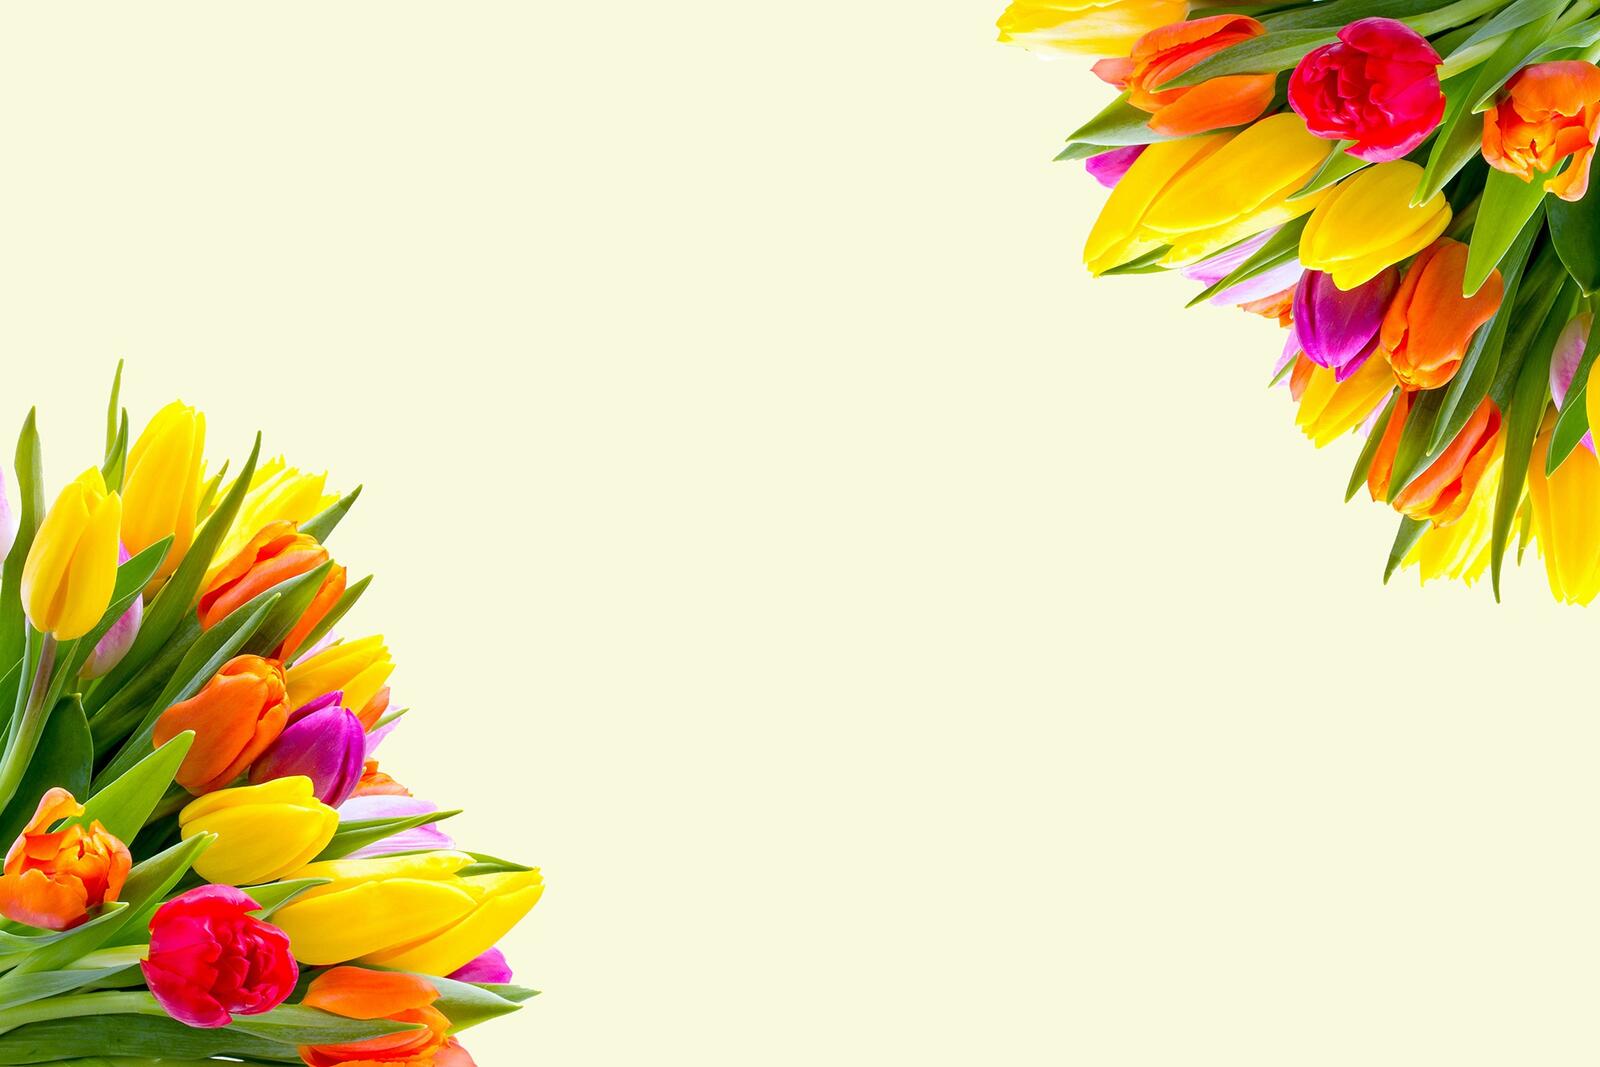 Wallpapers flower daisy family design on the desktop